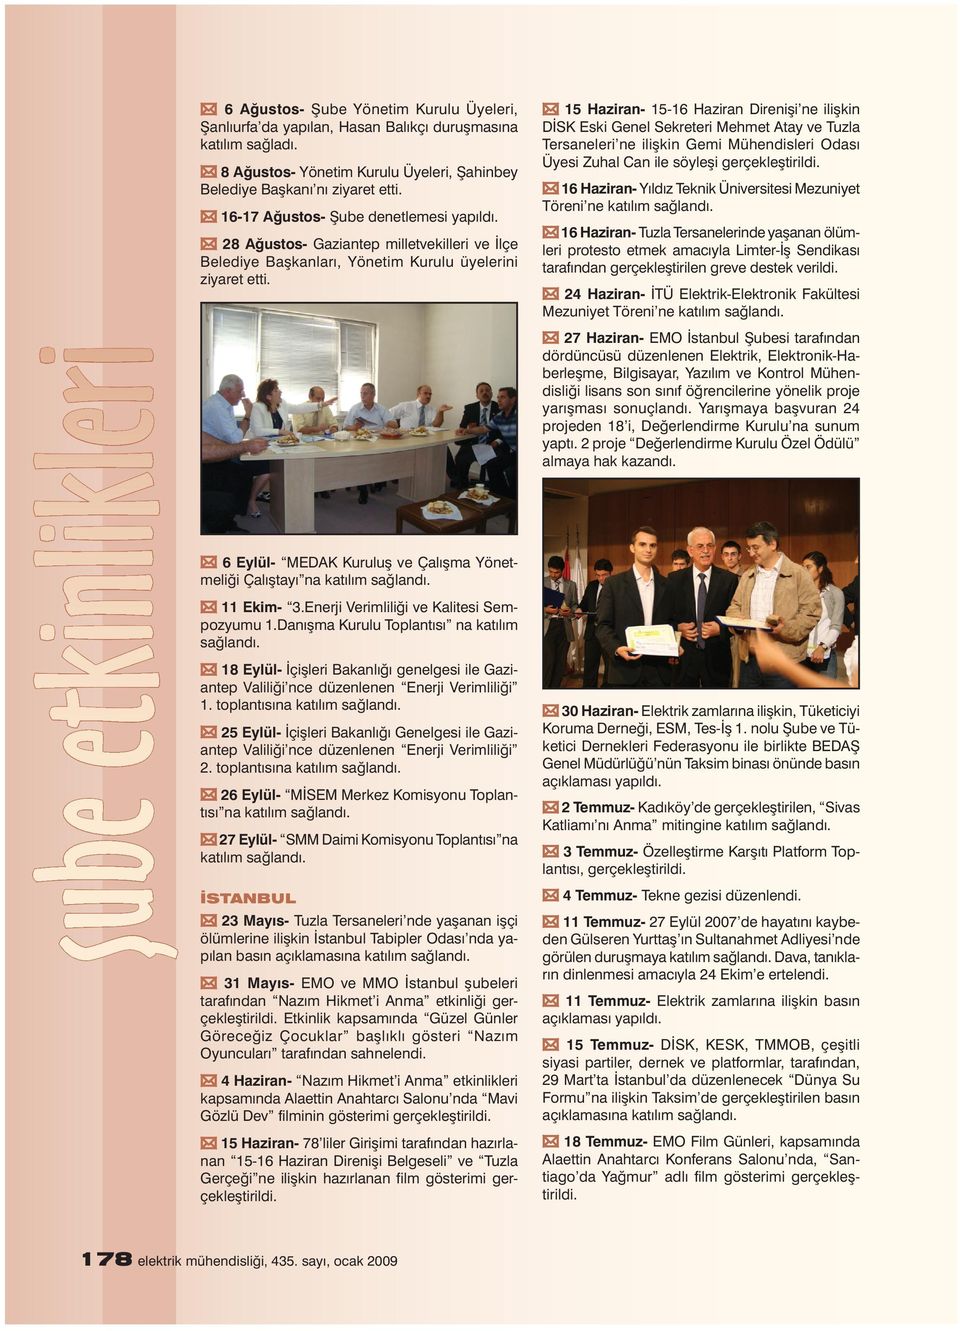 6 Eylül- MEDAK Kuruluș ve Çalıșma Yönetmeliği Çalıștayı na 11 Ekim- 3.Enerji Verimliliği ve Kalitesi Sempozyumu 1.